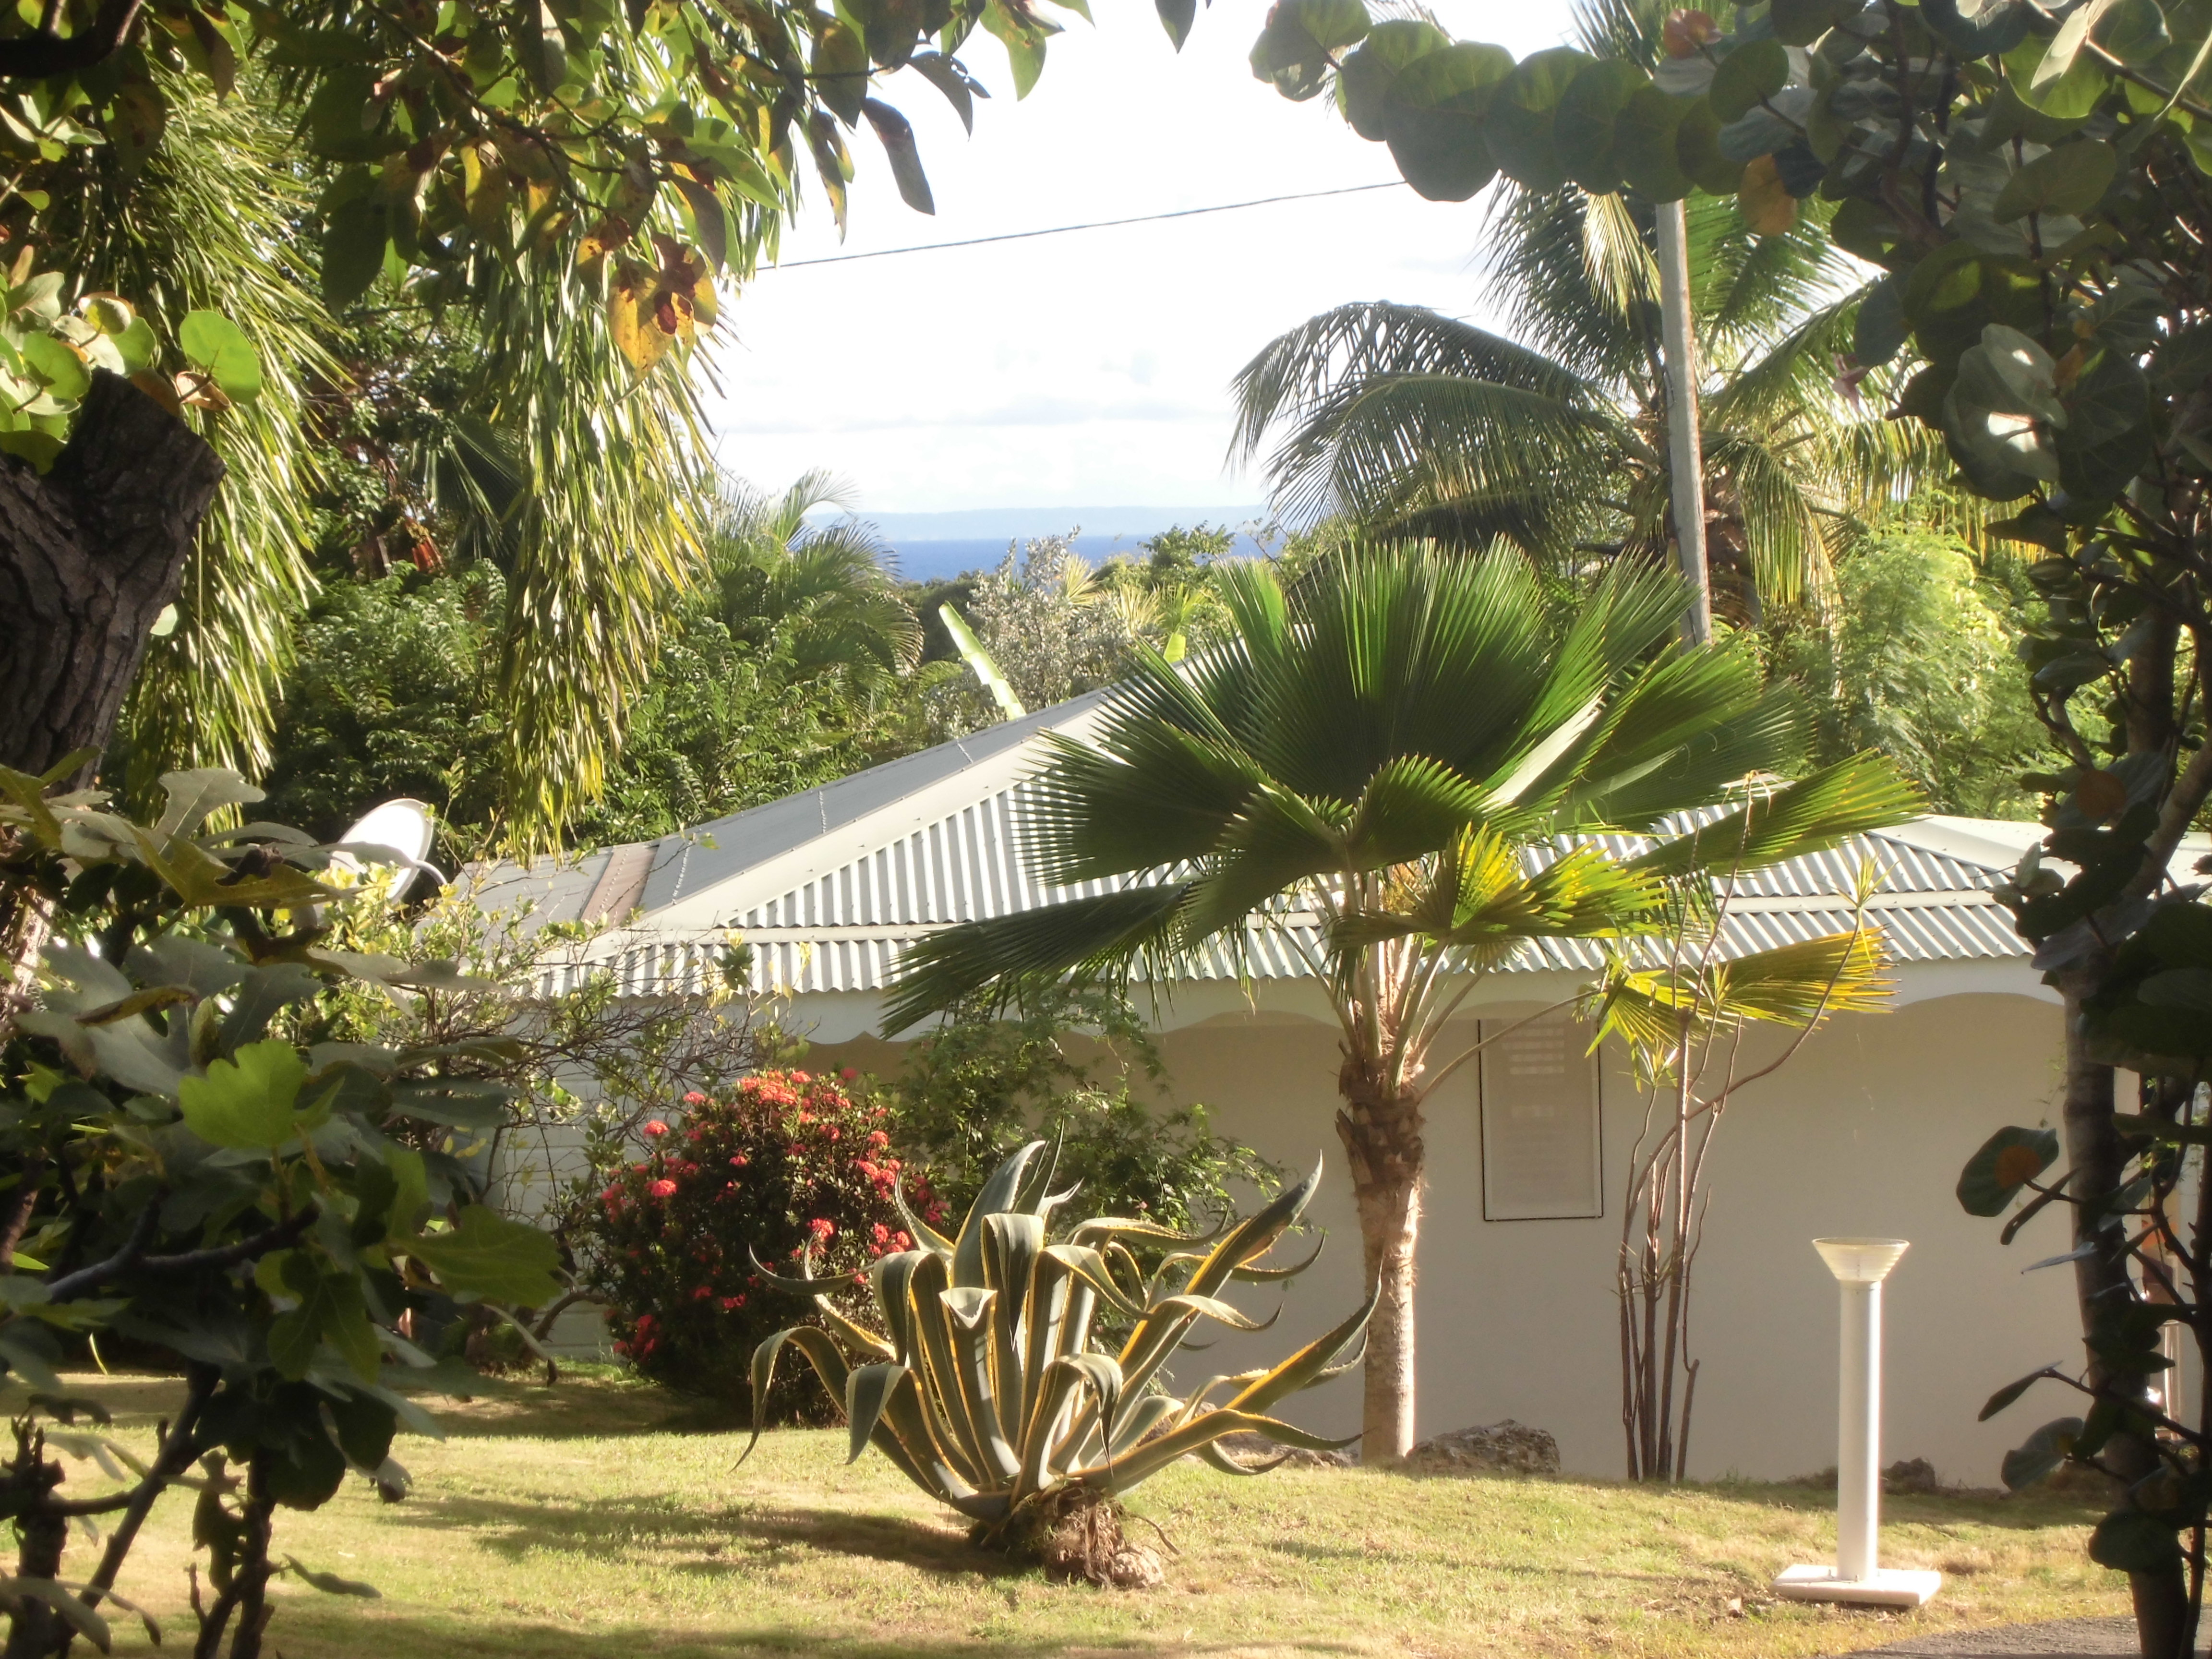 Location, Saint-François, gite, Guadeloupe, vacances, bungalow, villa luxe